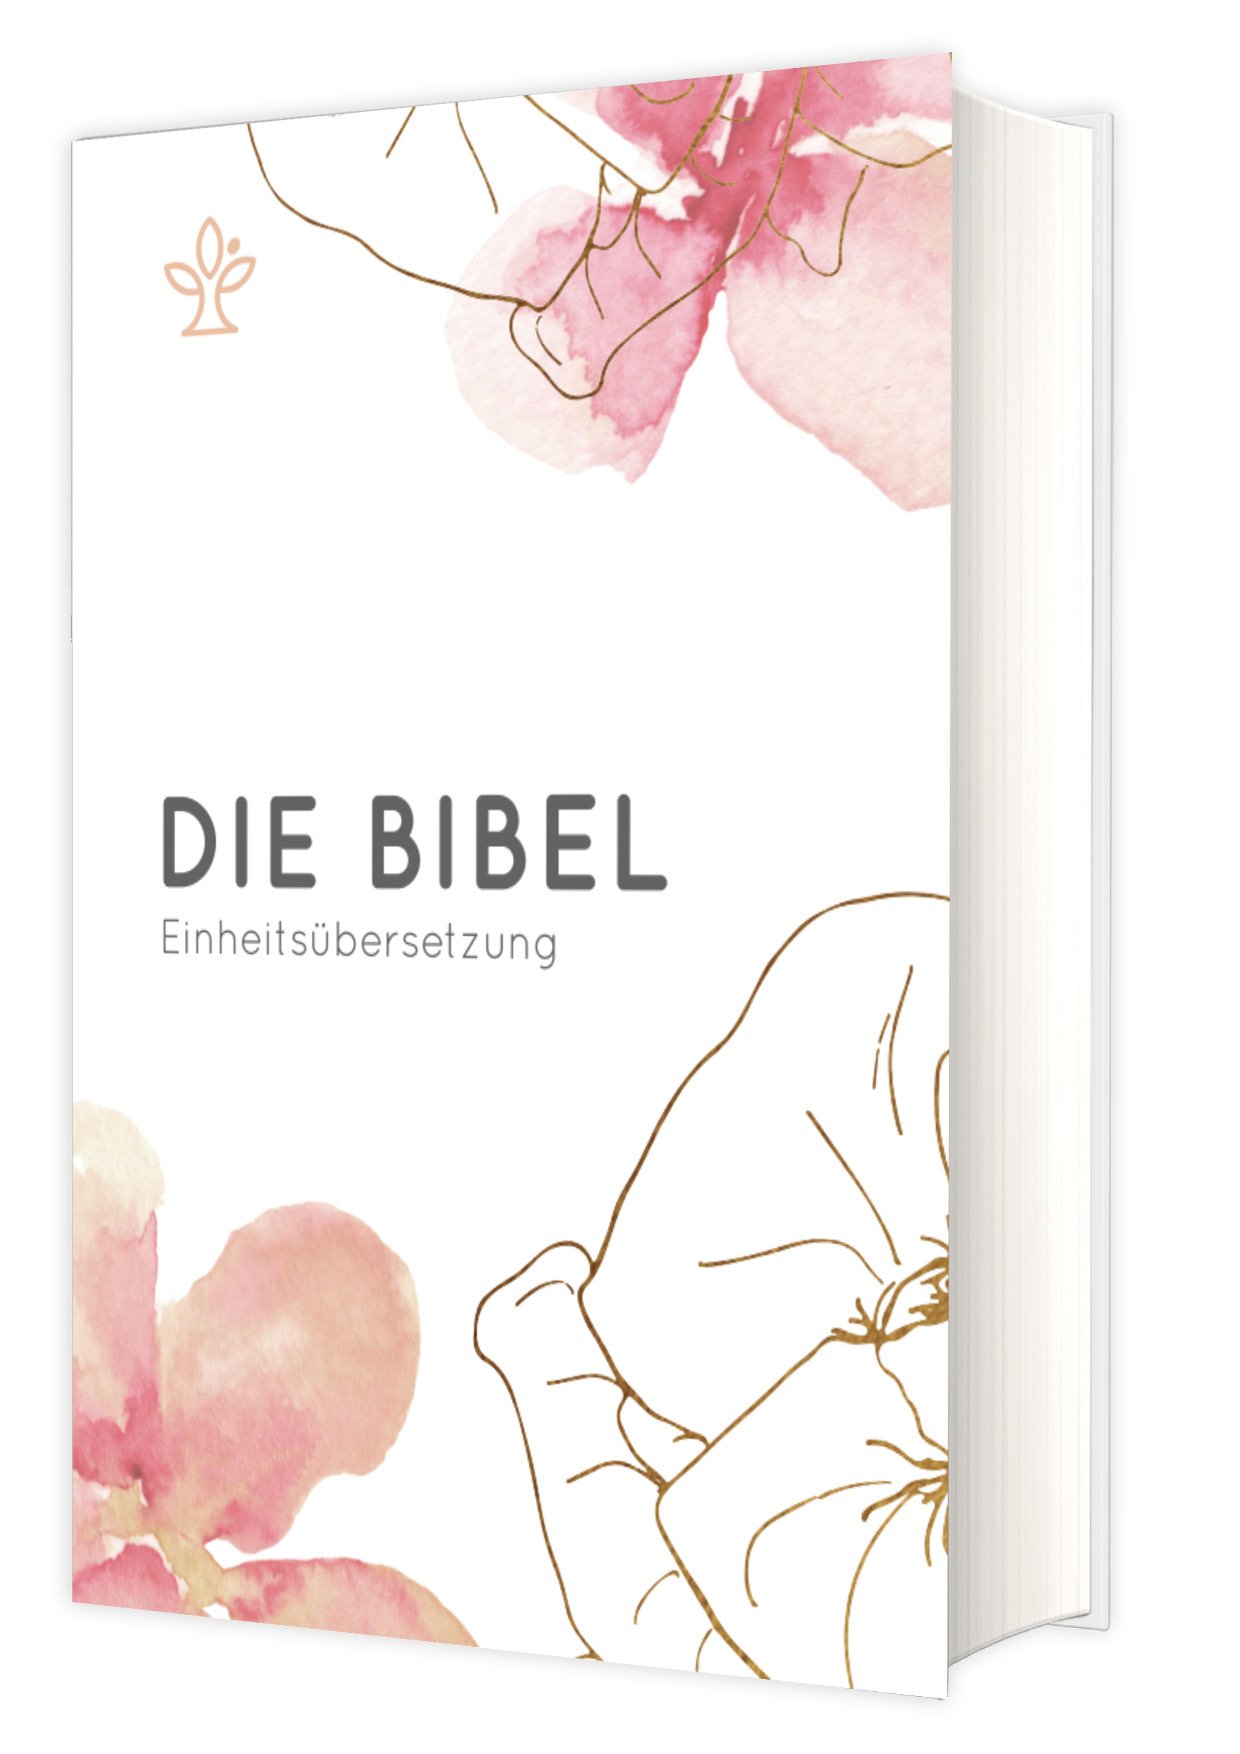 Die Bibel - Einheitsübersetzung - Cover